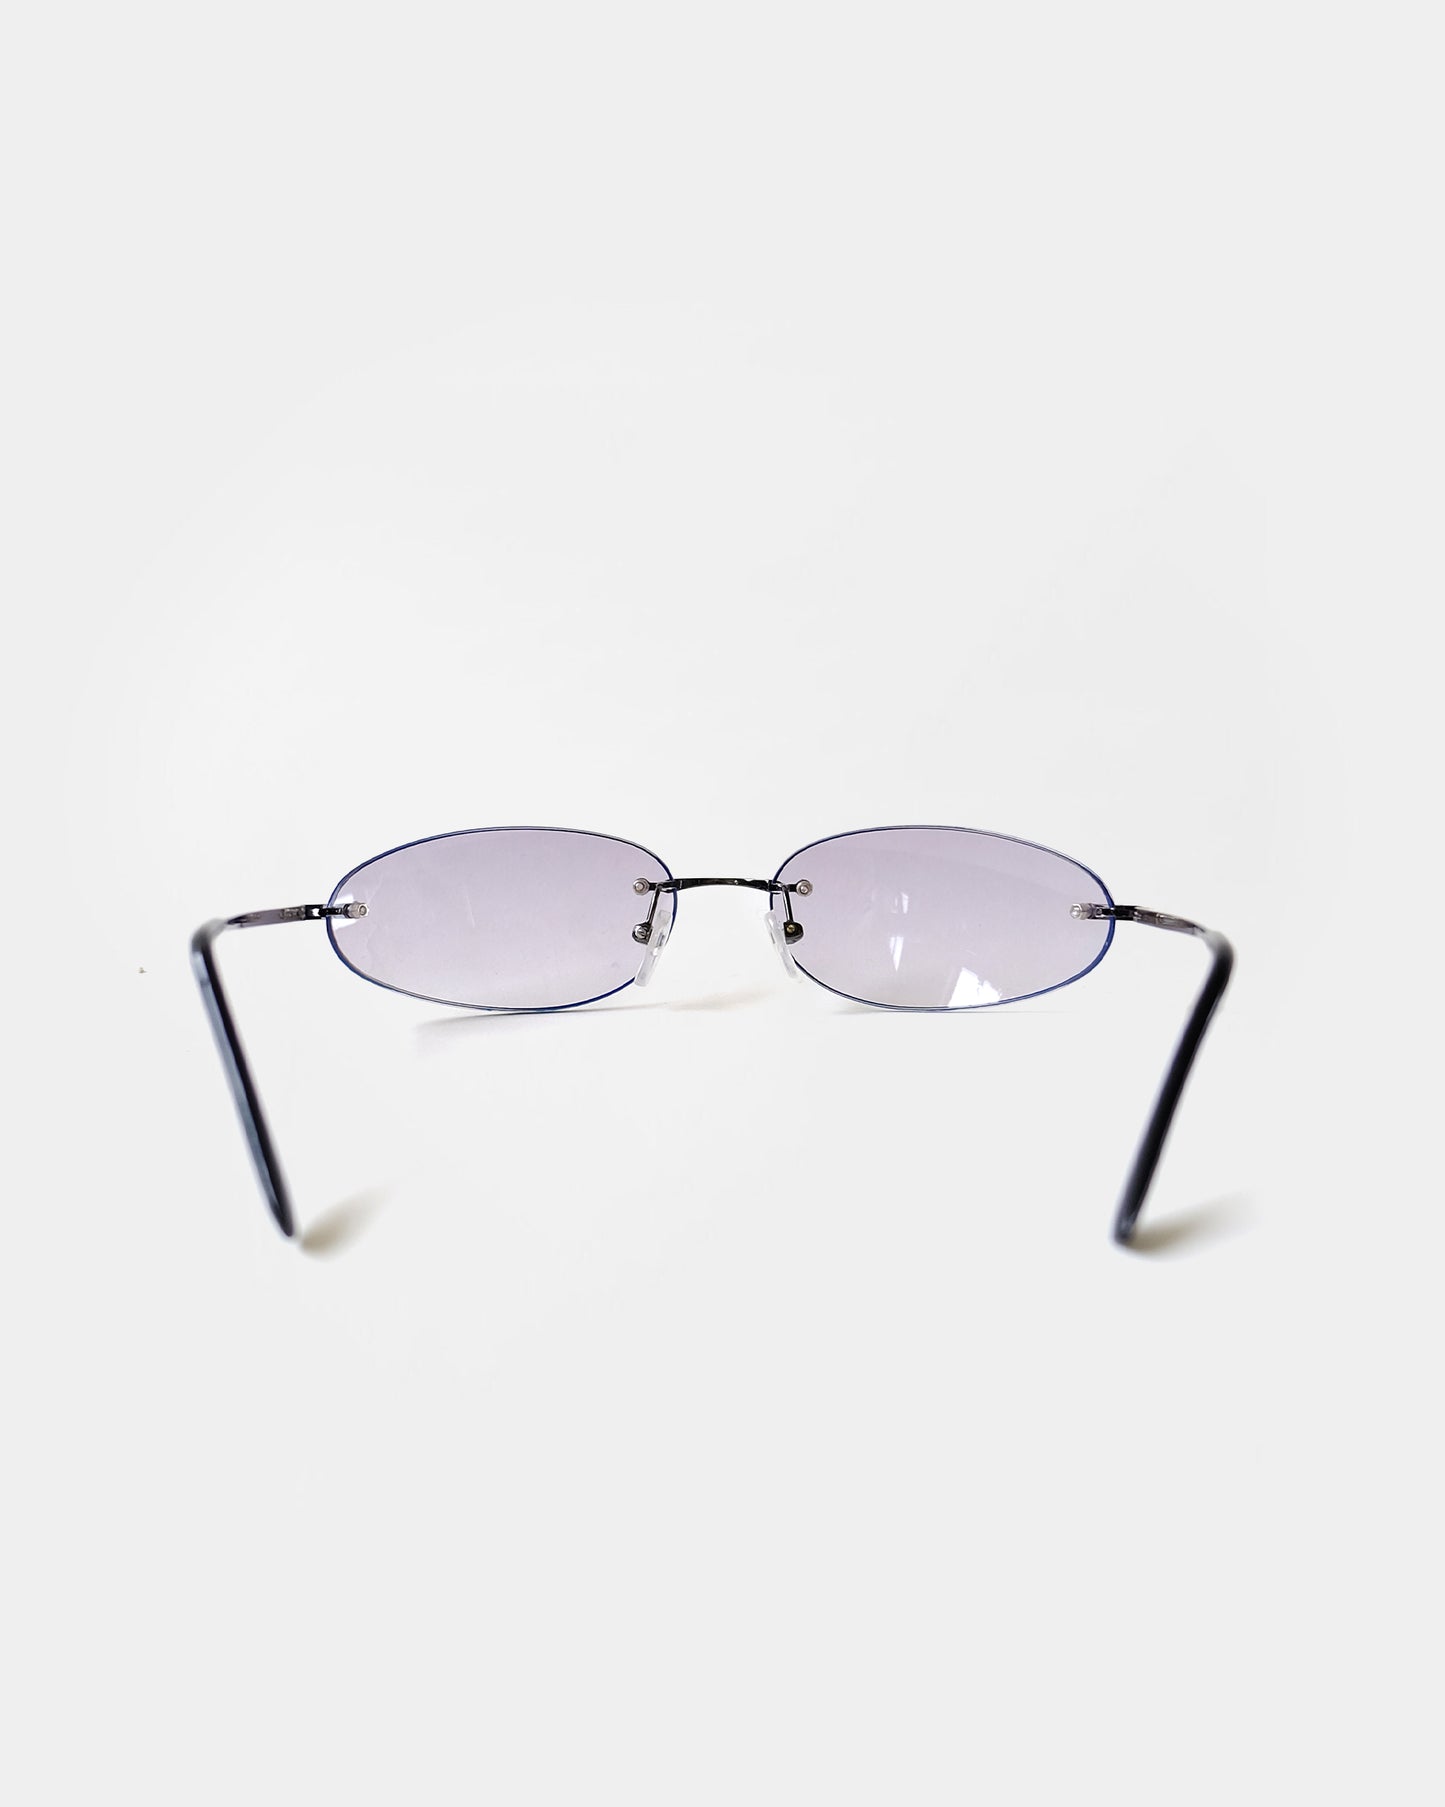 NOS 90s Frameless Frame Sunglasses